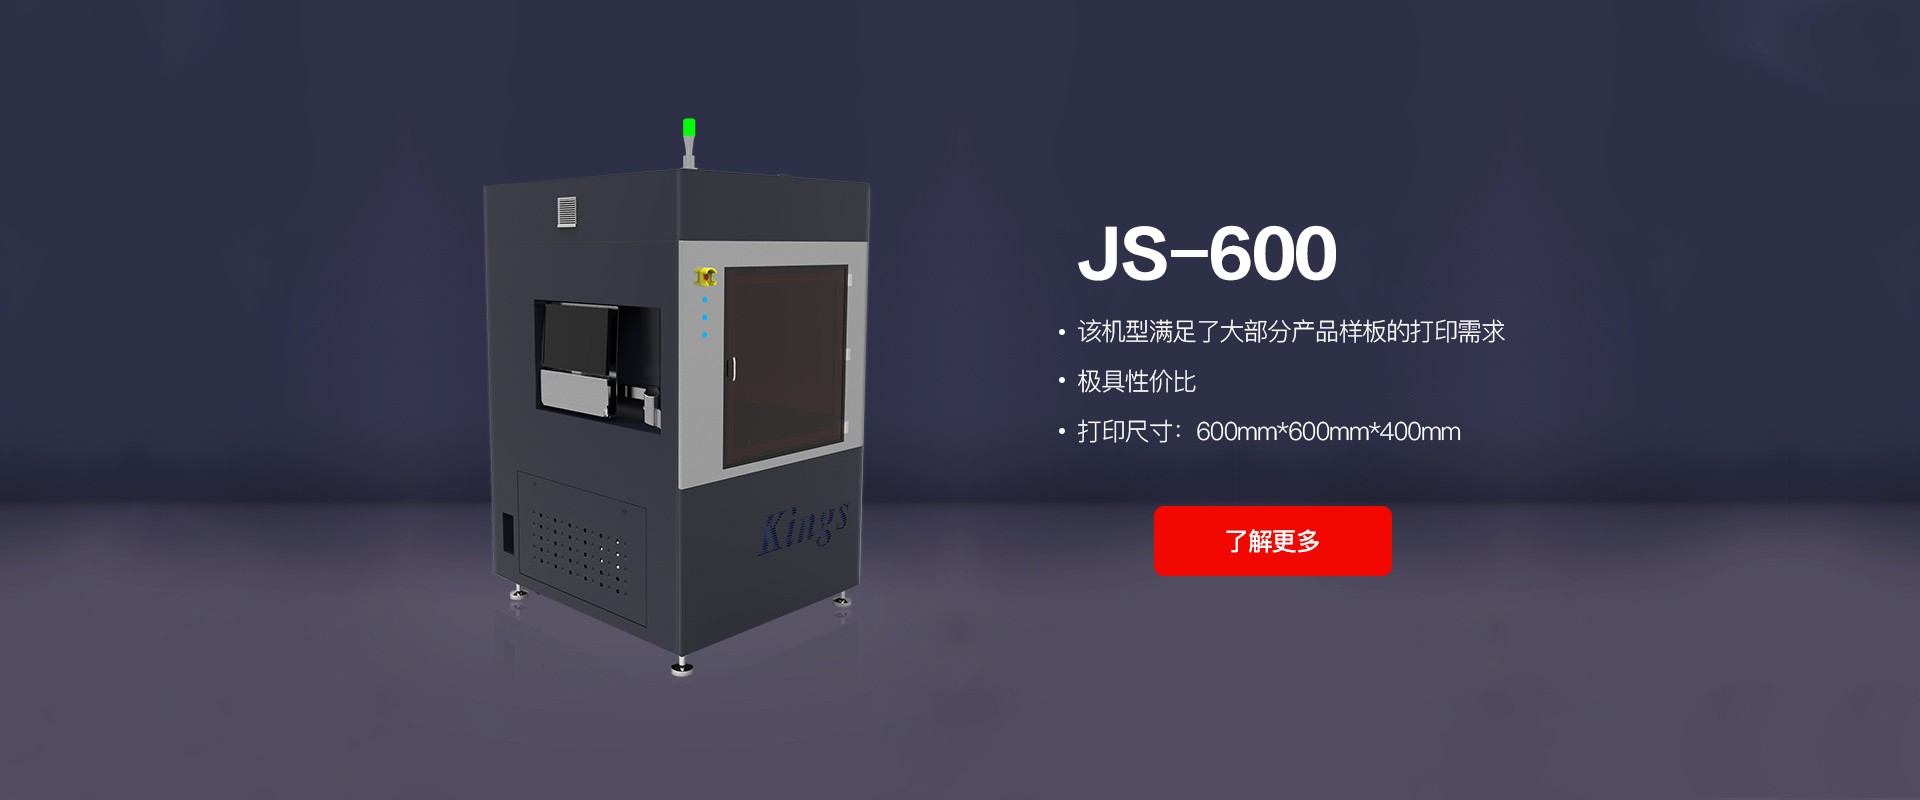 JS-600